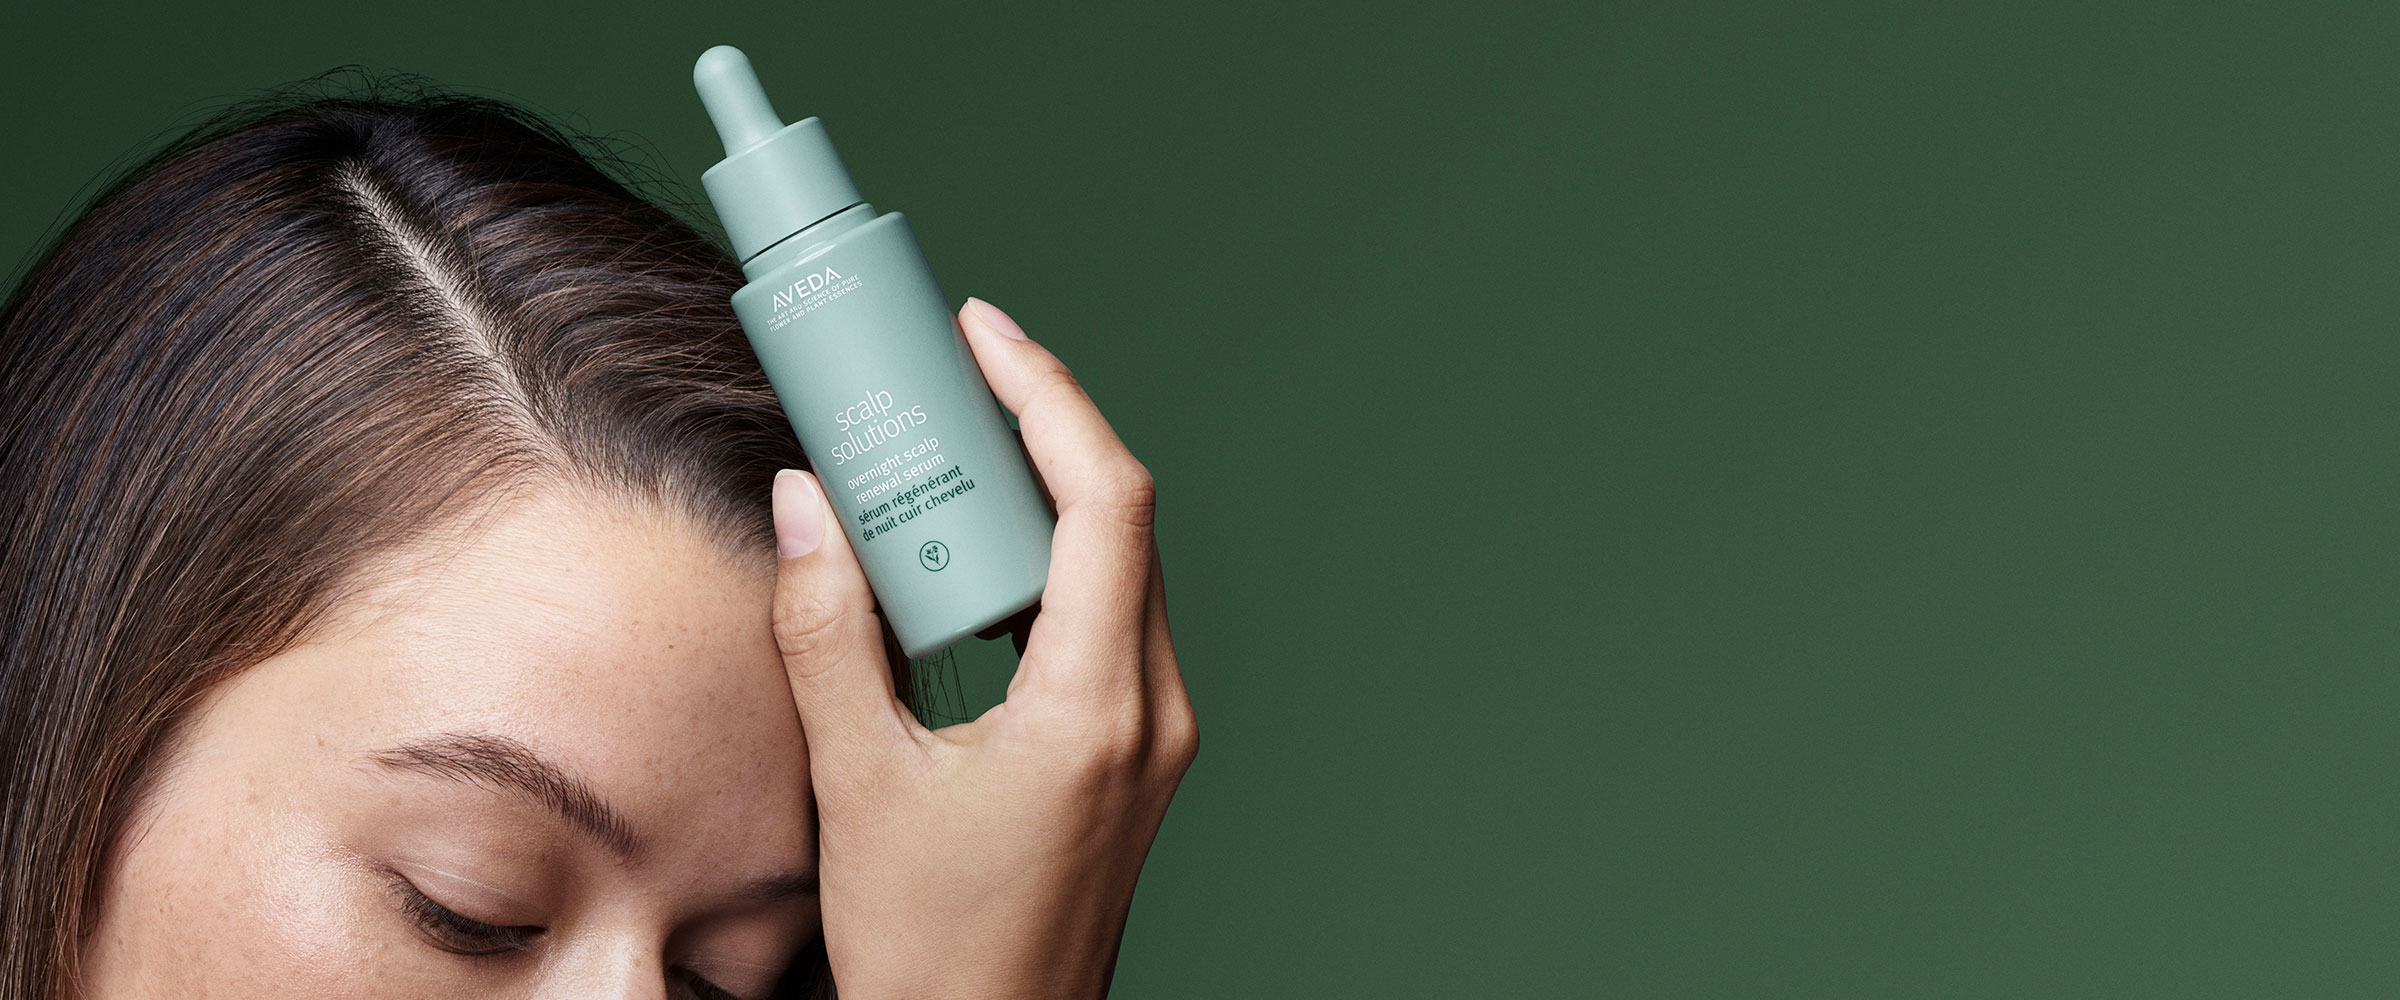 Compra el sérum renovador de noche de scalp solutions para el cuero cabelludo de Aveda, que mejora la hidratación del cuero cabelludo en un 51% en una sola noche.